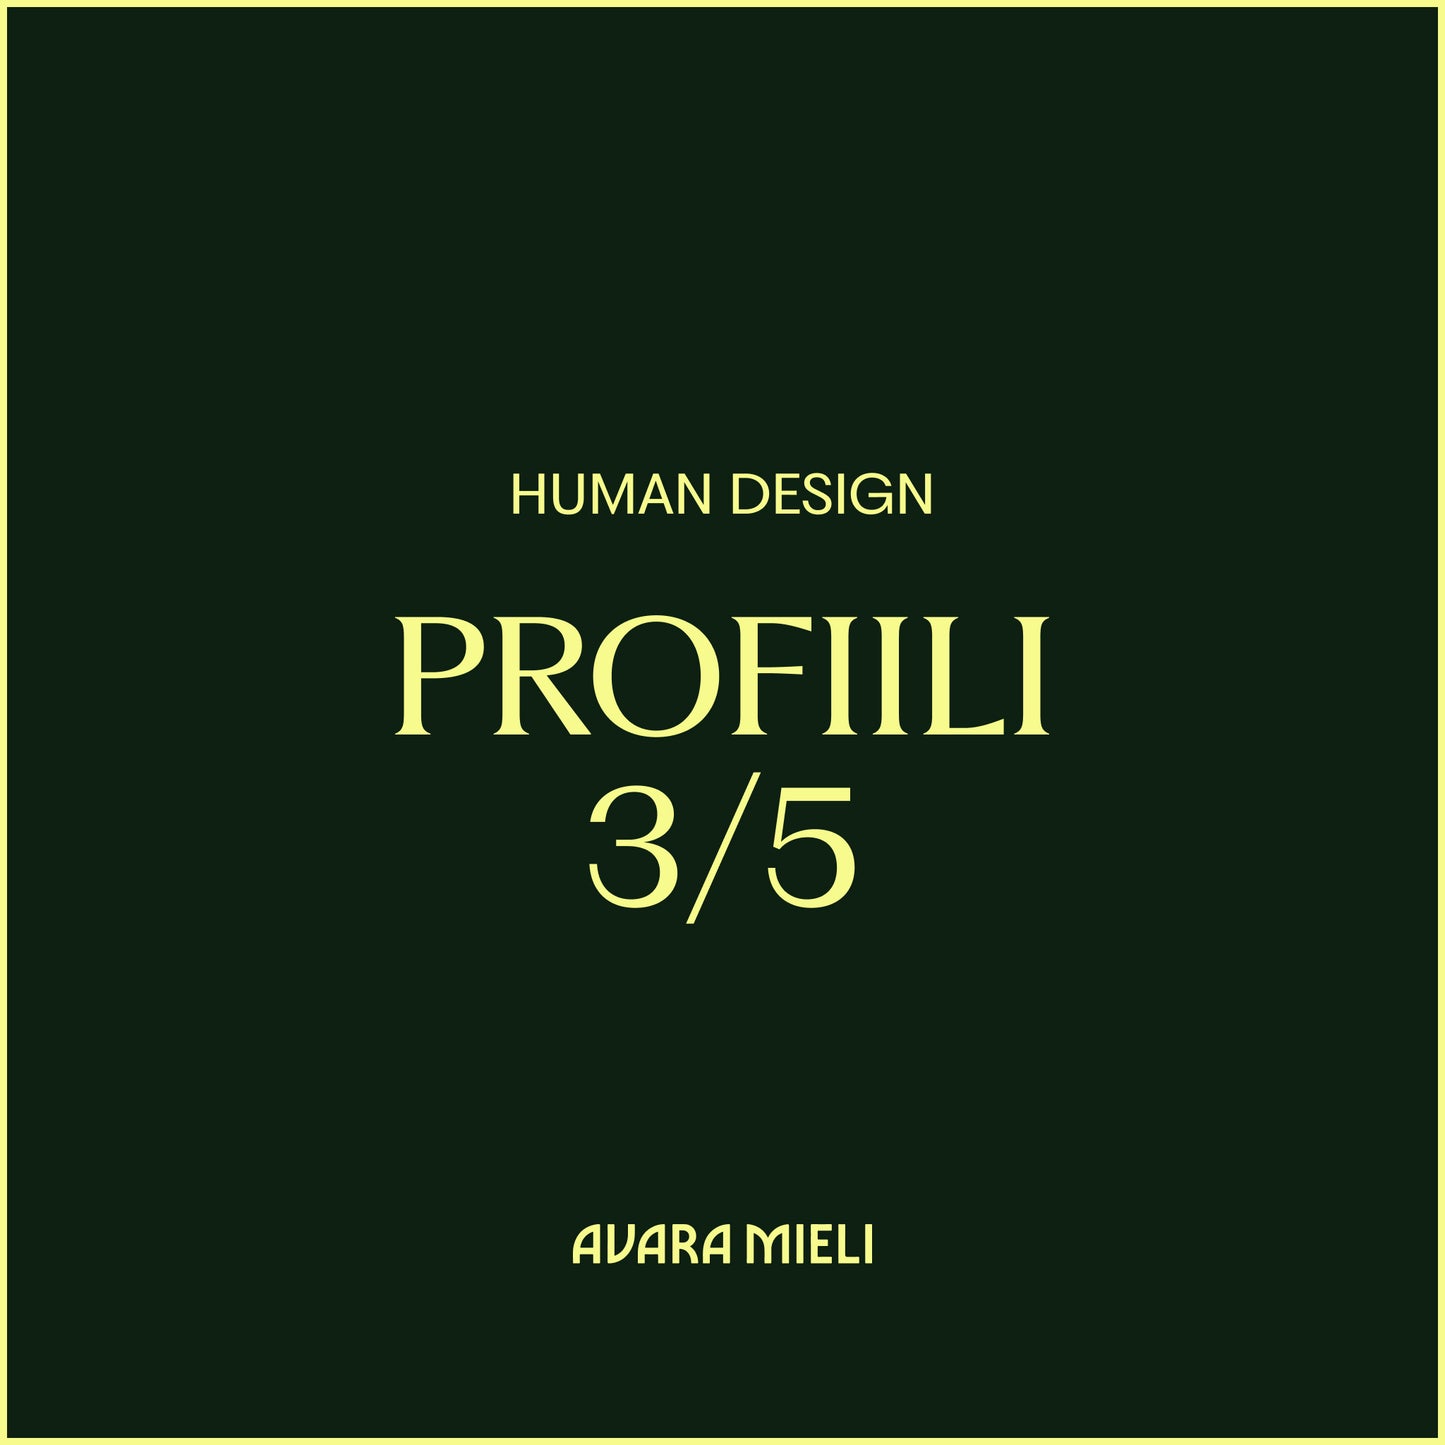 Human Design Profiili 3/5